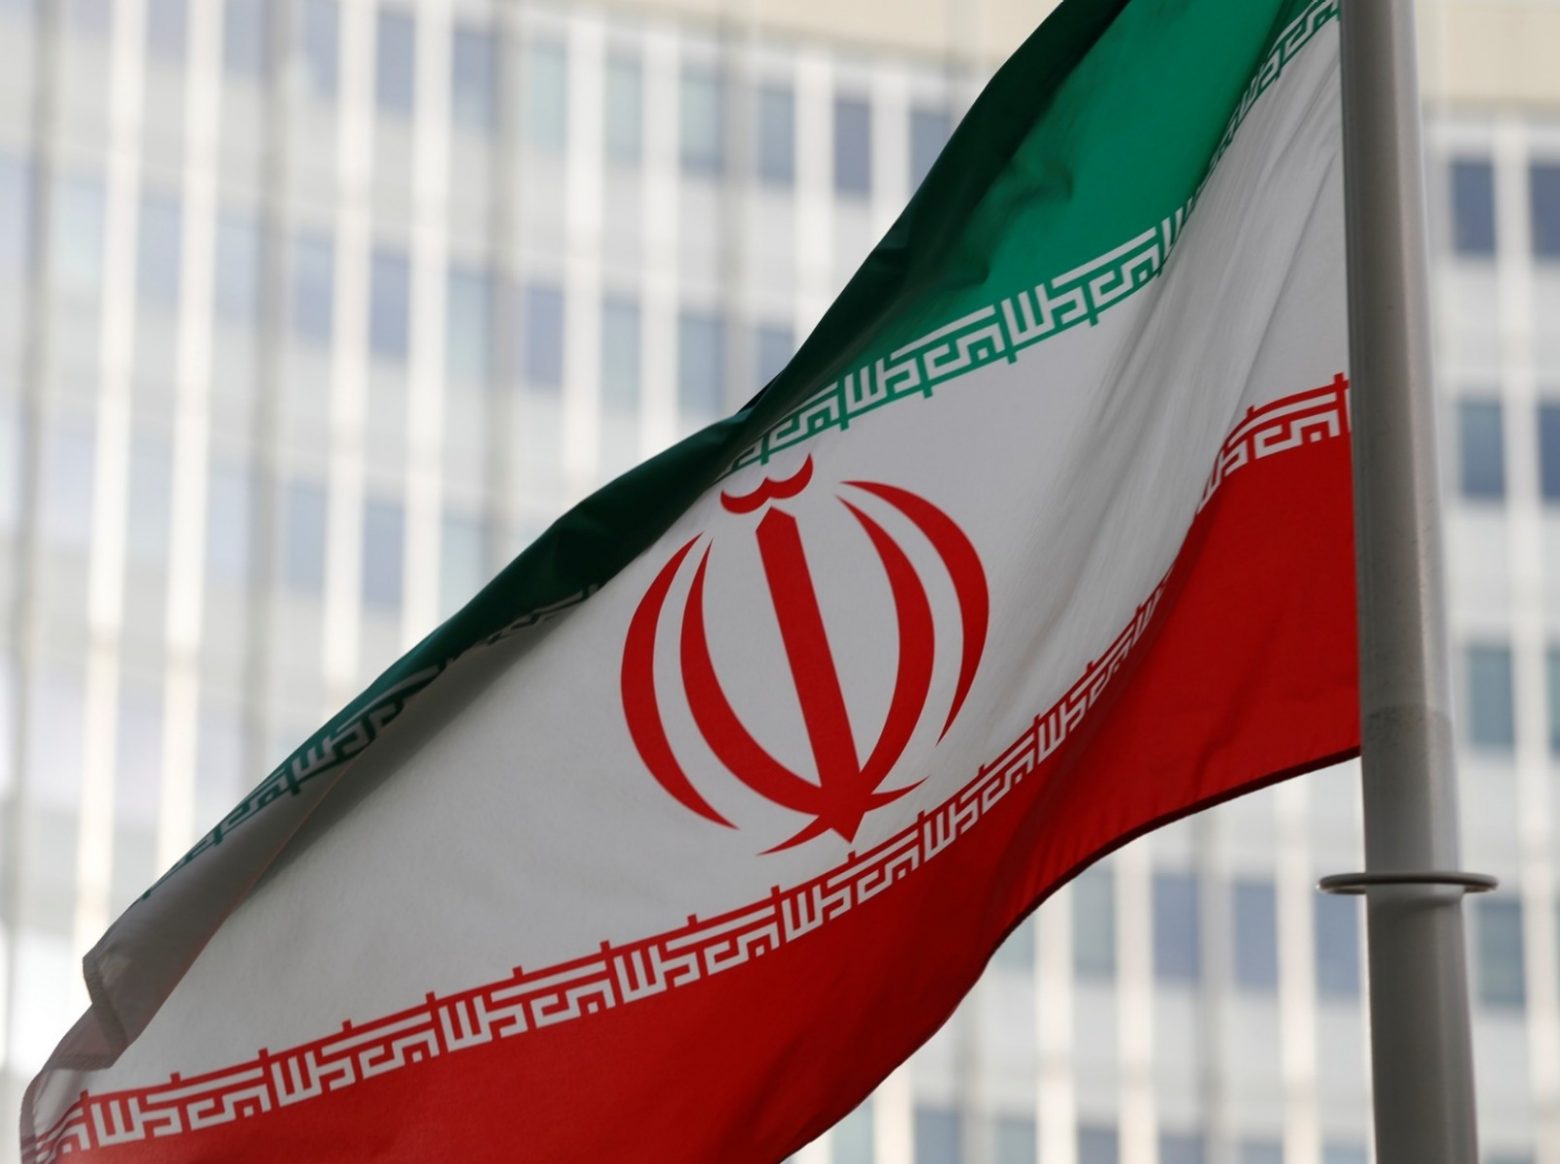 Οι ΗΠΑ έσπασαν την συμφωνία με το Ιράν για παροχή βοήθειας 6 δισ. δολ. παρά την τήρηση των συμφωνημένων από την Τεχεράνη